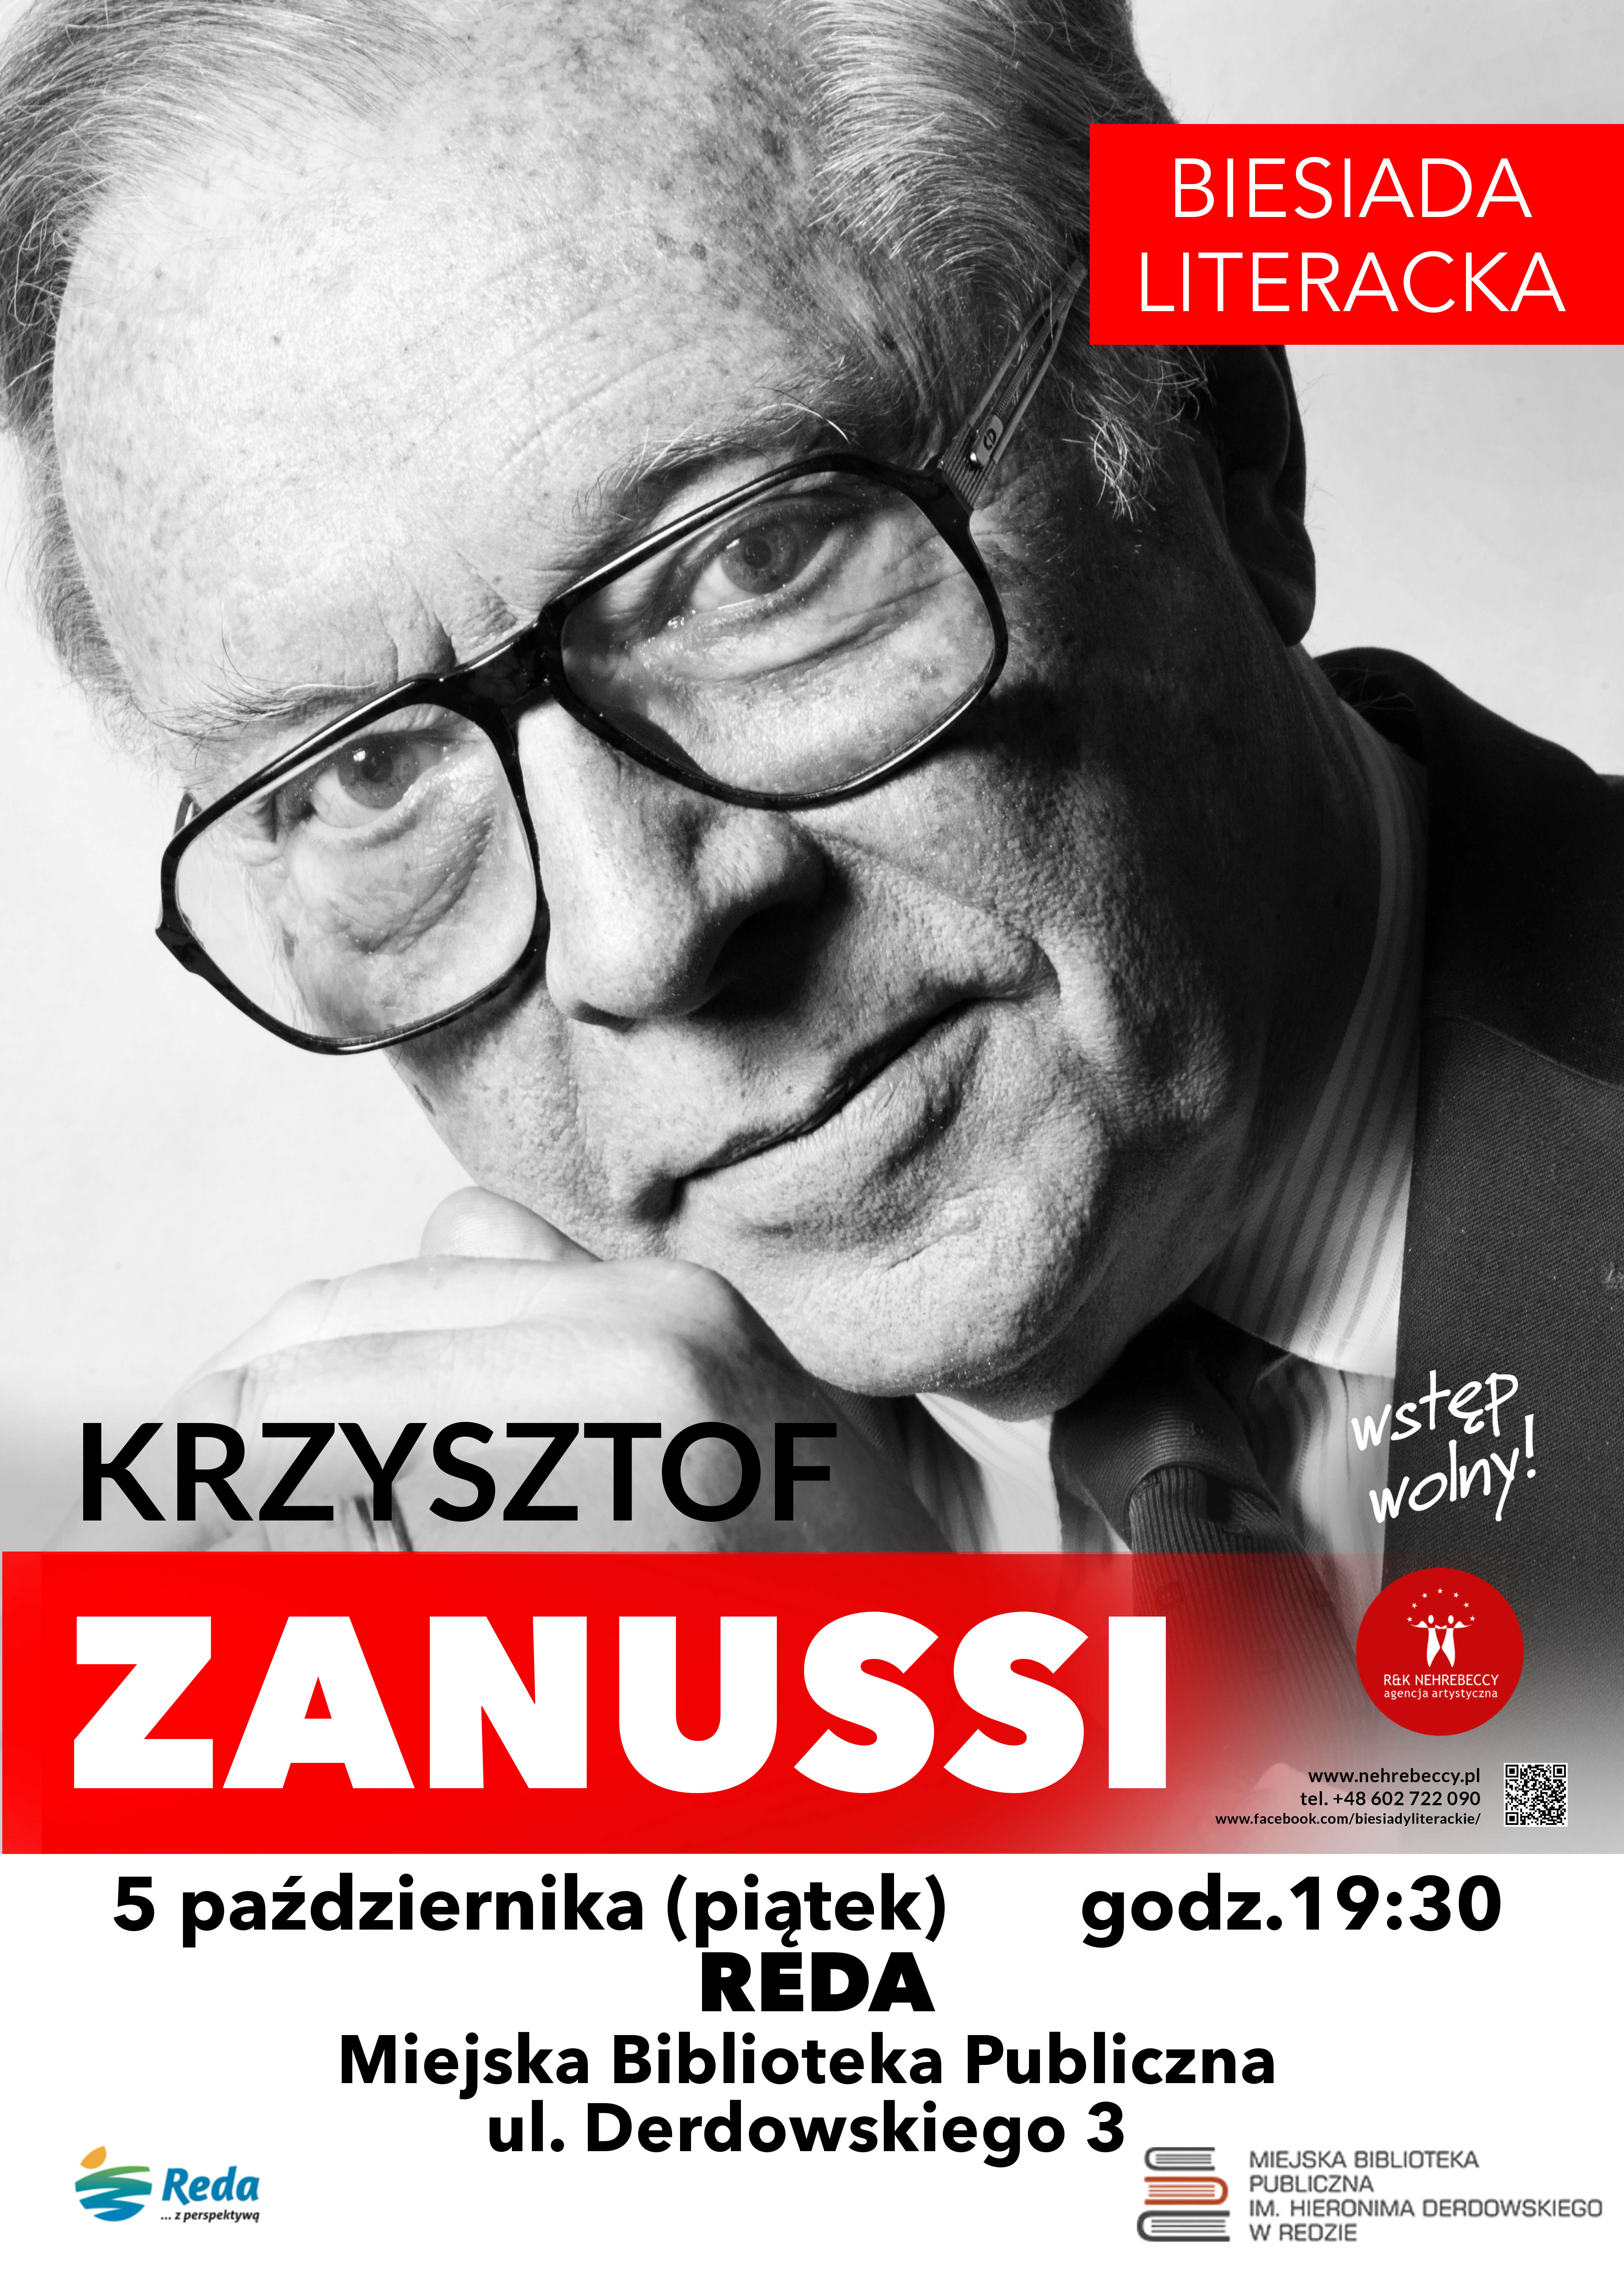 Zapraszamy na spotkanie z Krzysztofem Zanussim